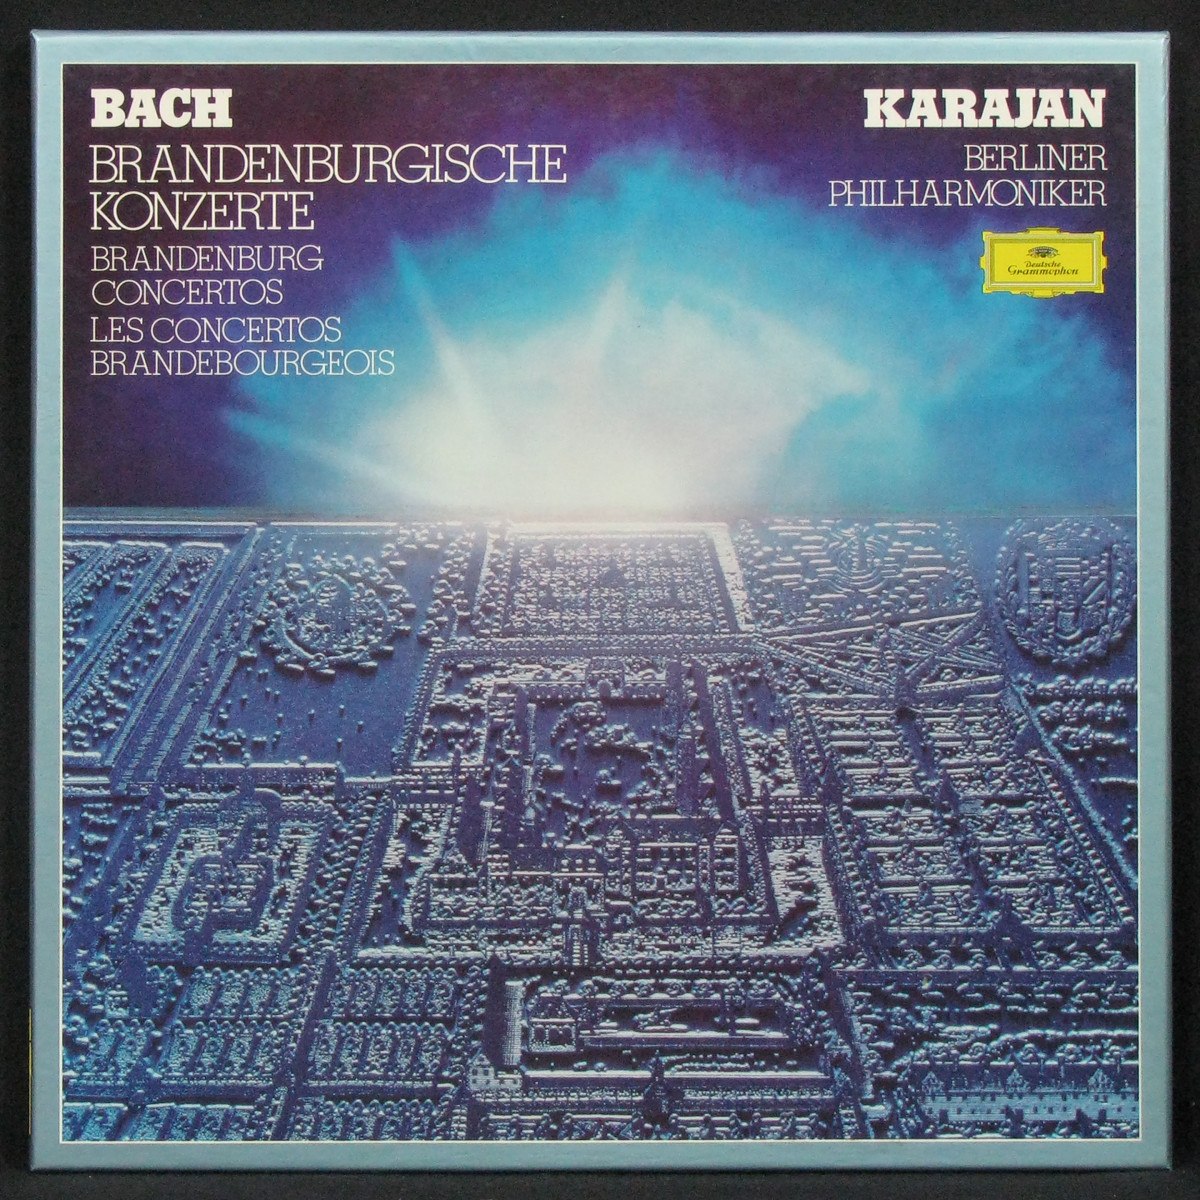 LP Herbert Von Karajan — Bach: Brandenburgische Konzerte / Brandenburg Concertos / Les Concertos Brandebourgeois (2LP Box, + booklet) фото